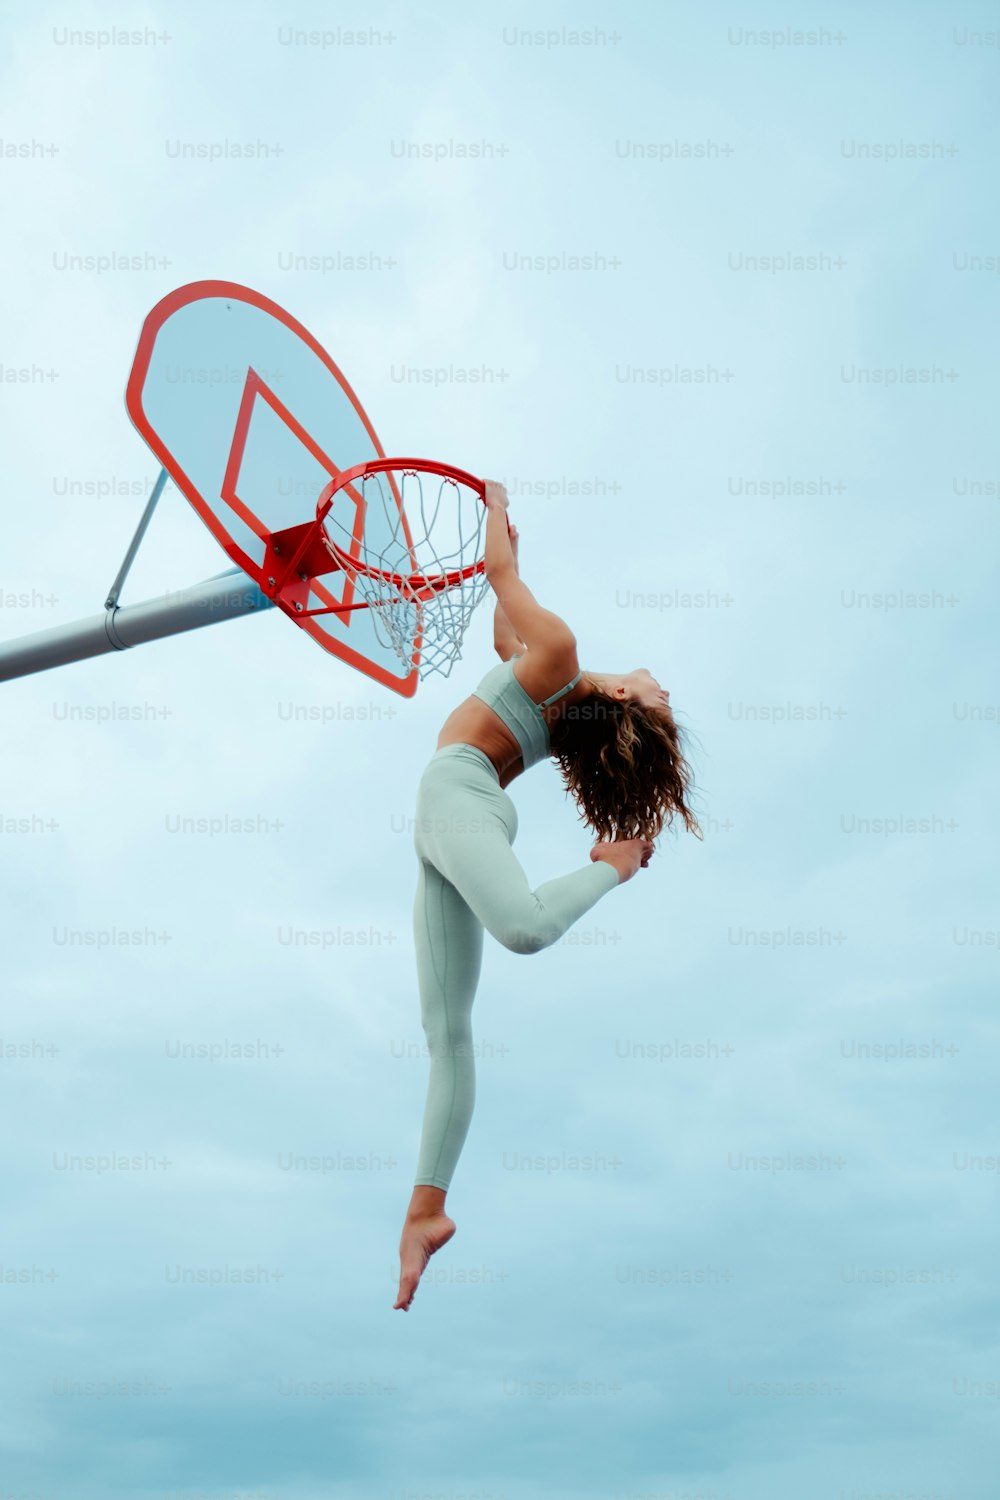 Una mujer saltando en el aire para clavar una pelota de baloncesto